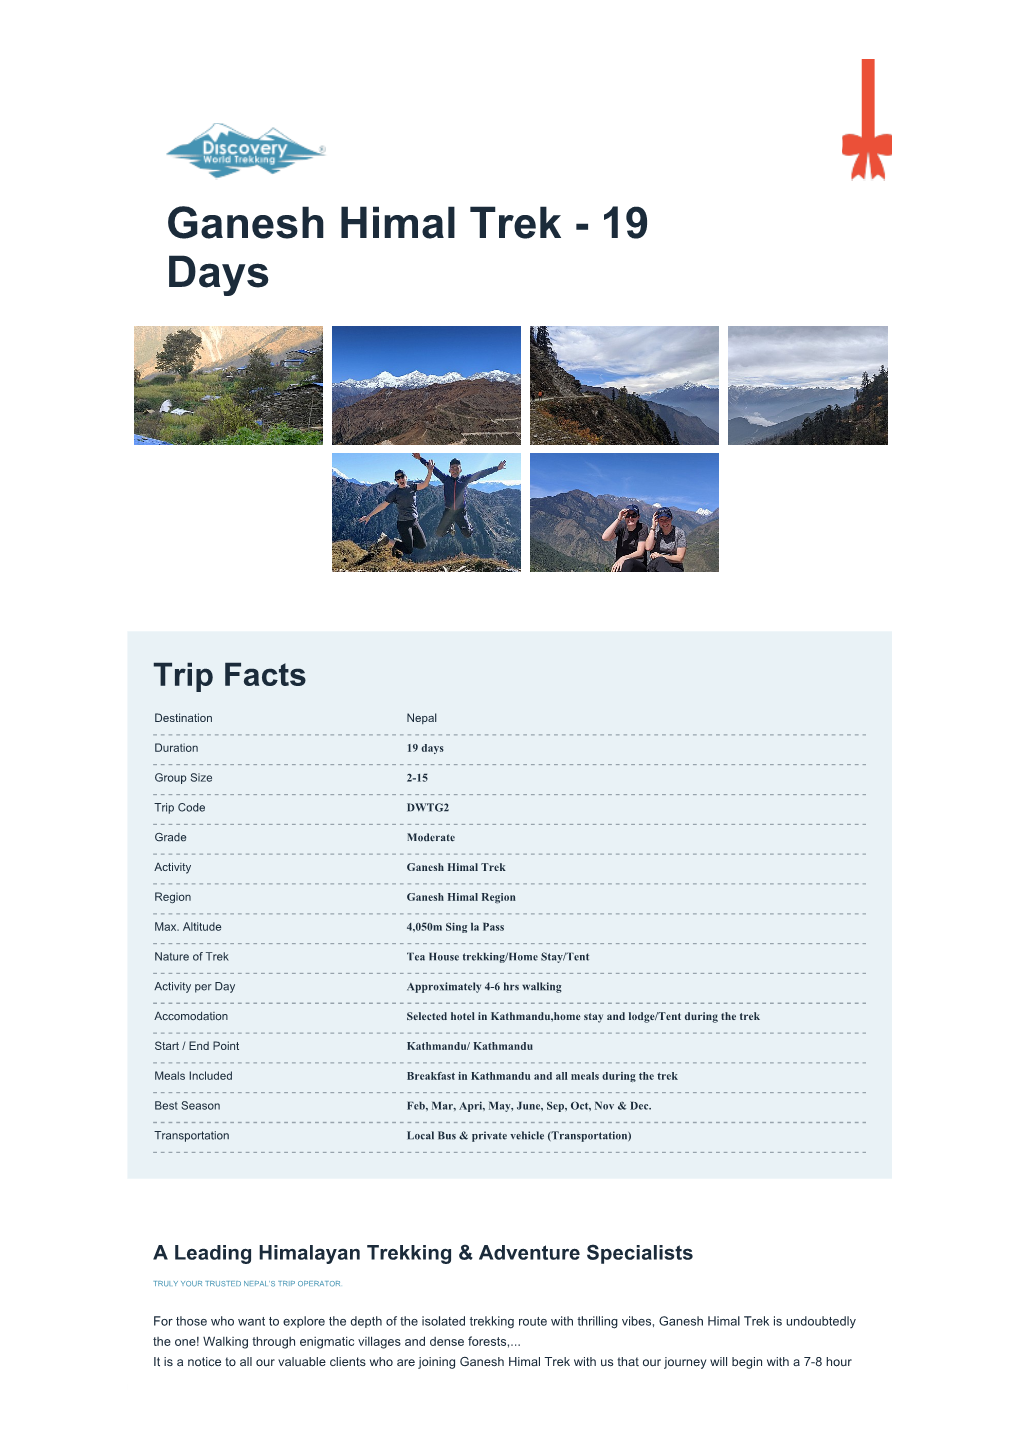 Ganesh Himal Trek - 19 Days